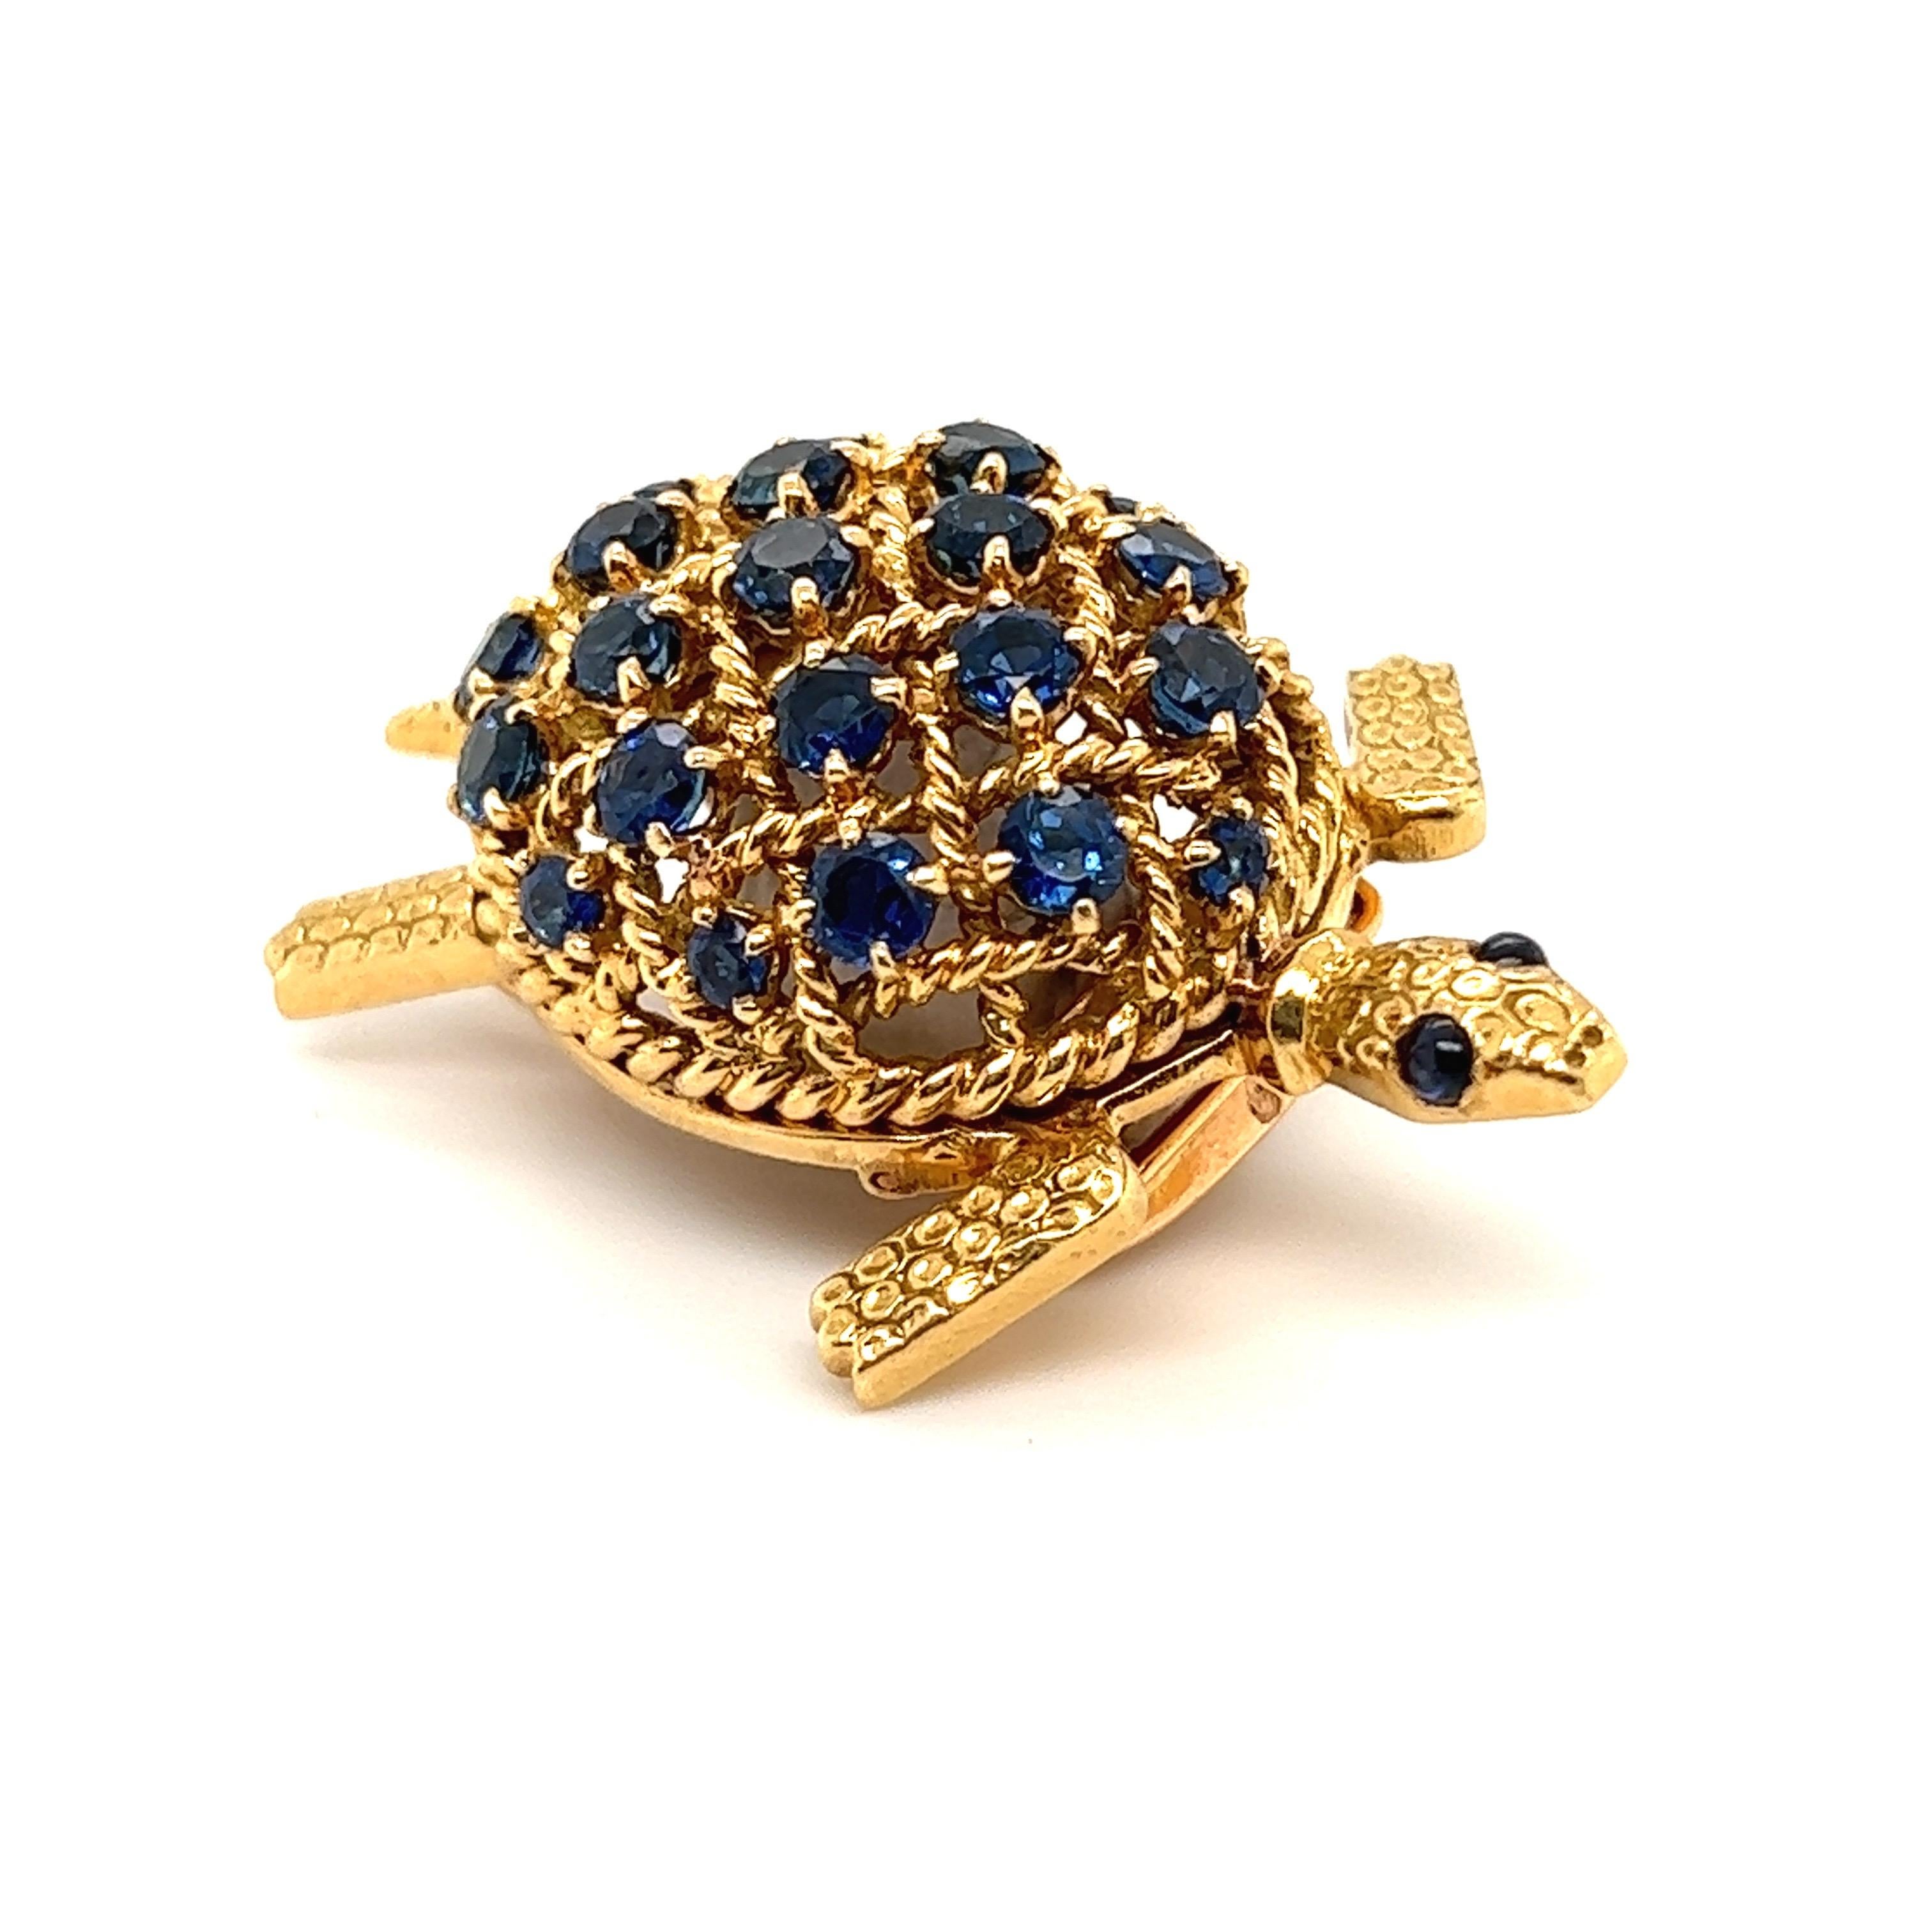 Ravissante broche tortue en or jaune 18 carats et saphir, par Cartier, vers les années 1950-1960.

Broche fantaisiste de Cartier, en forme de tortue, le corps en or jaune finement texturé, la carapace en fil d'or cordé et décorée de saphirs bleus